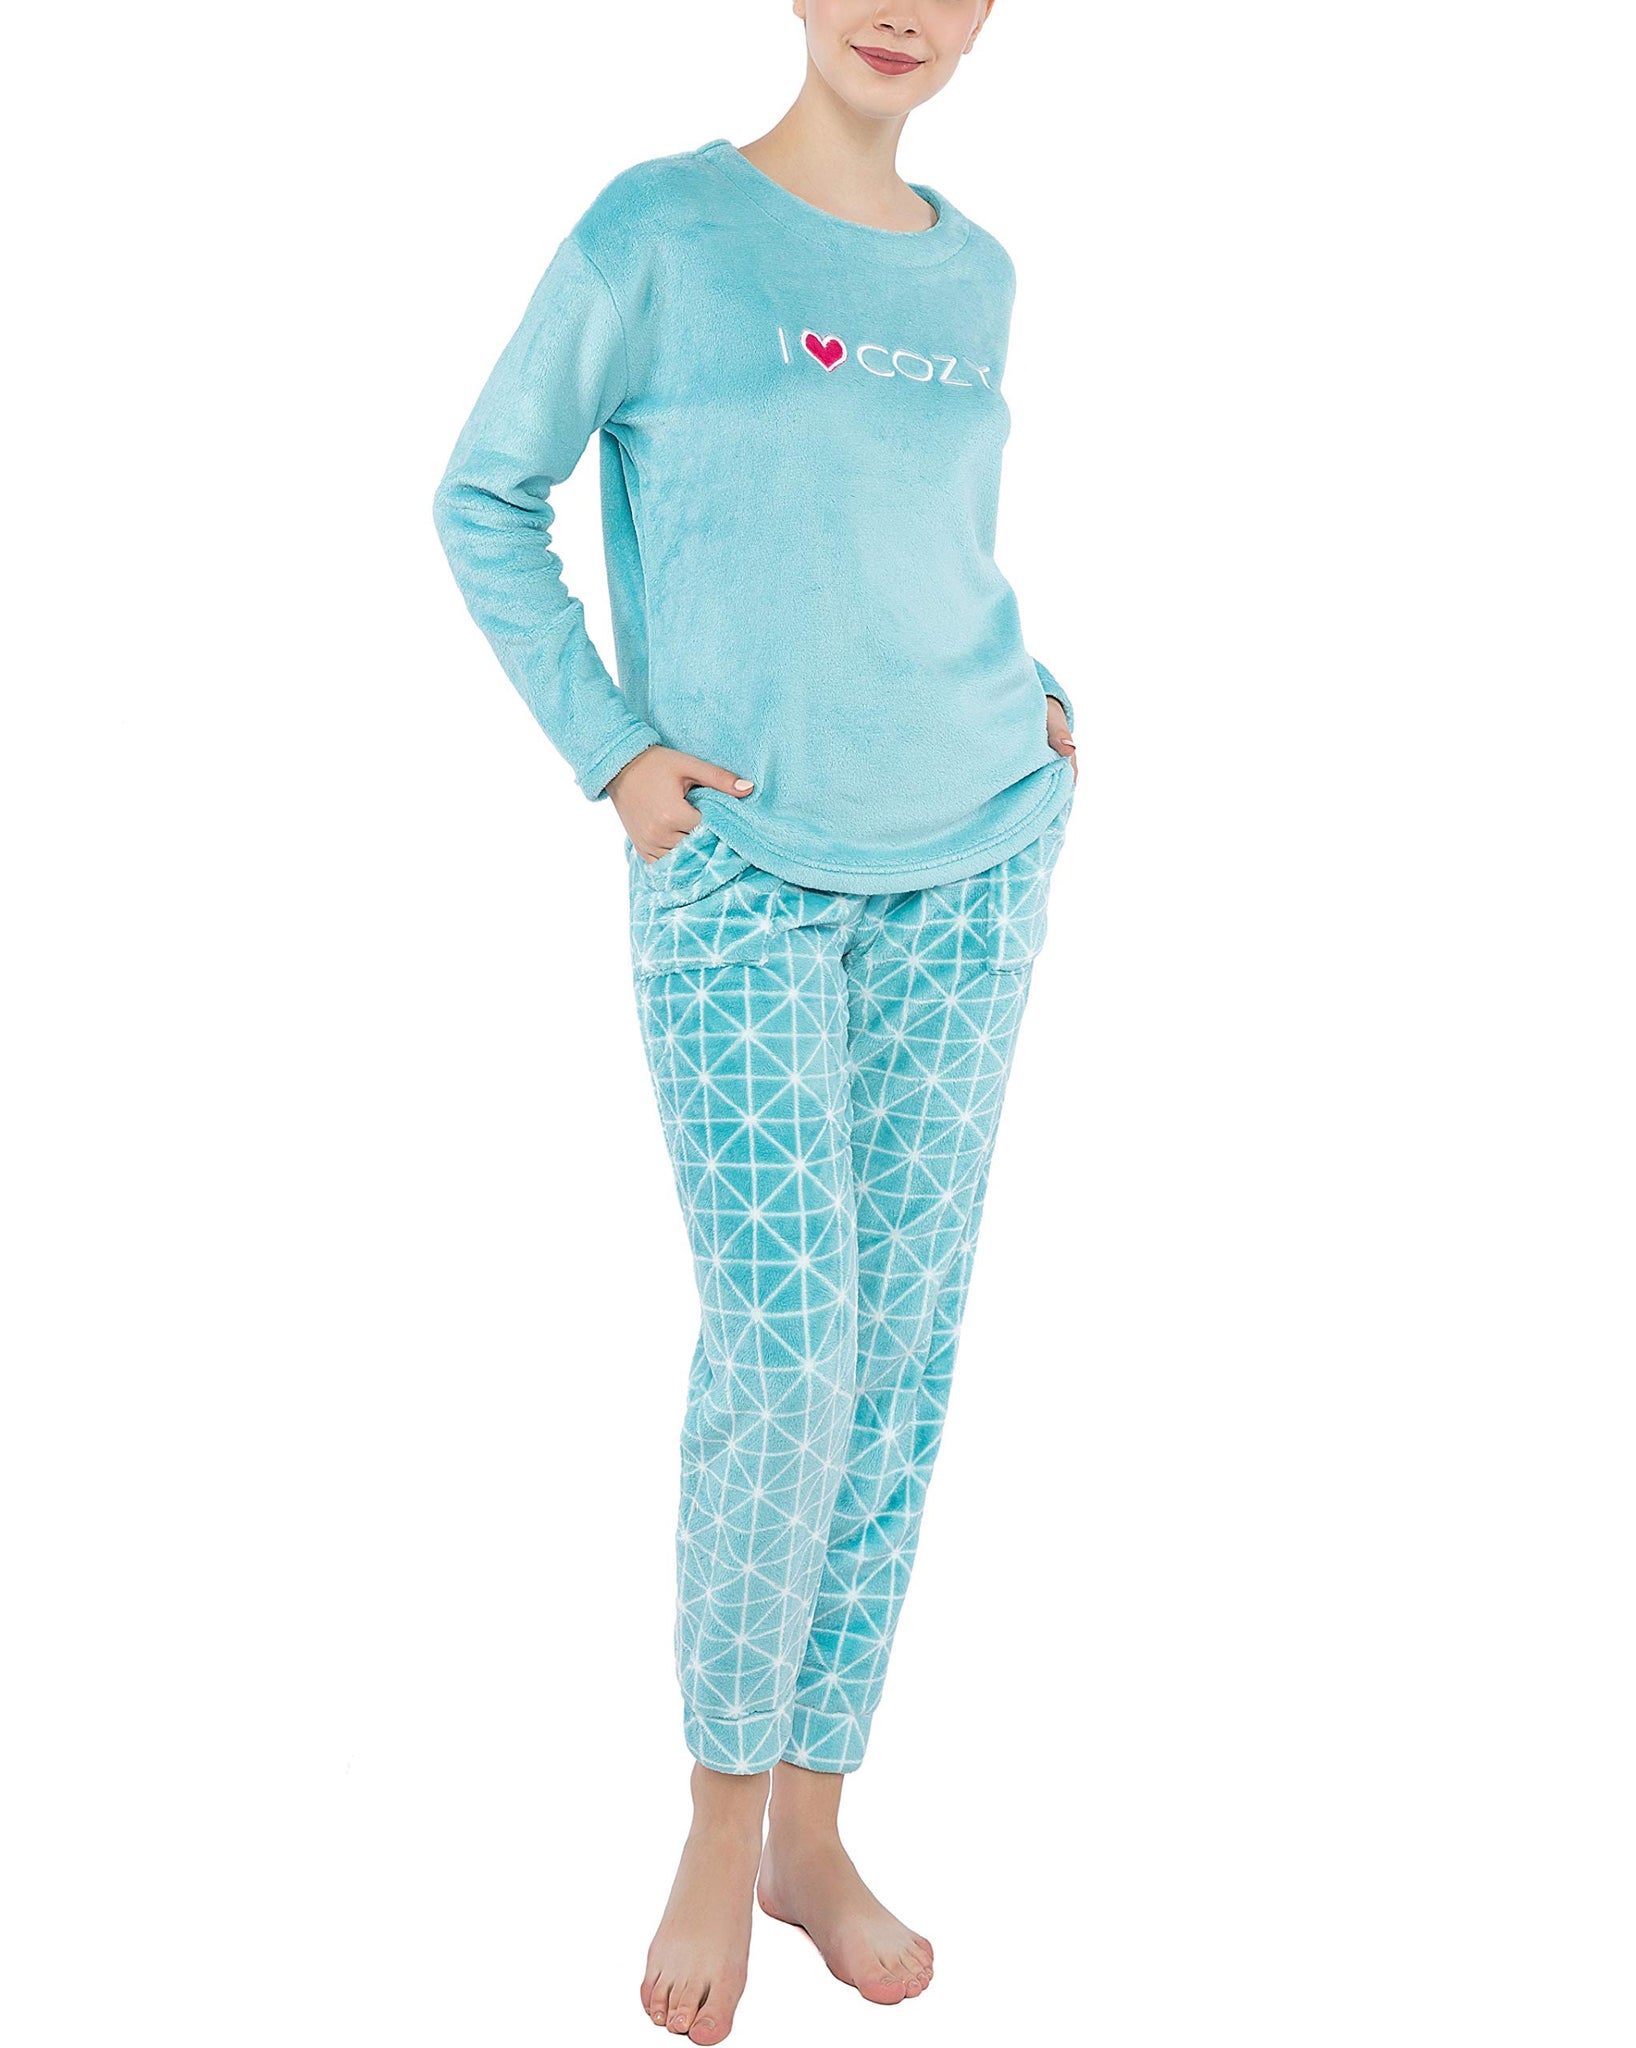 Printed Micro Fleece Pajama Top & Joggers Set for Girls